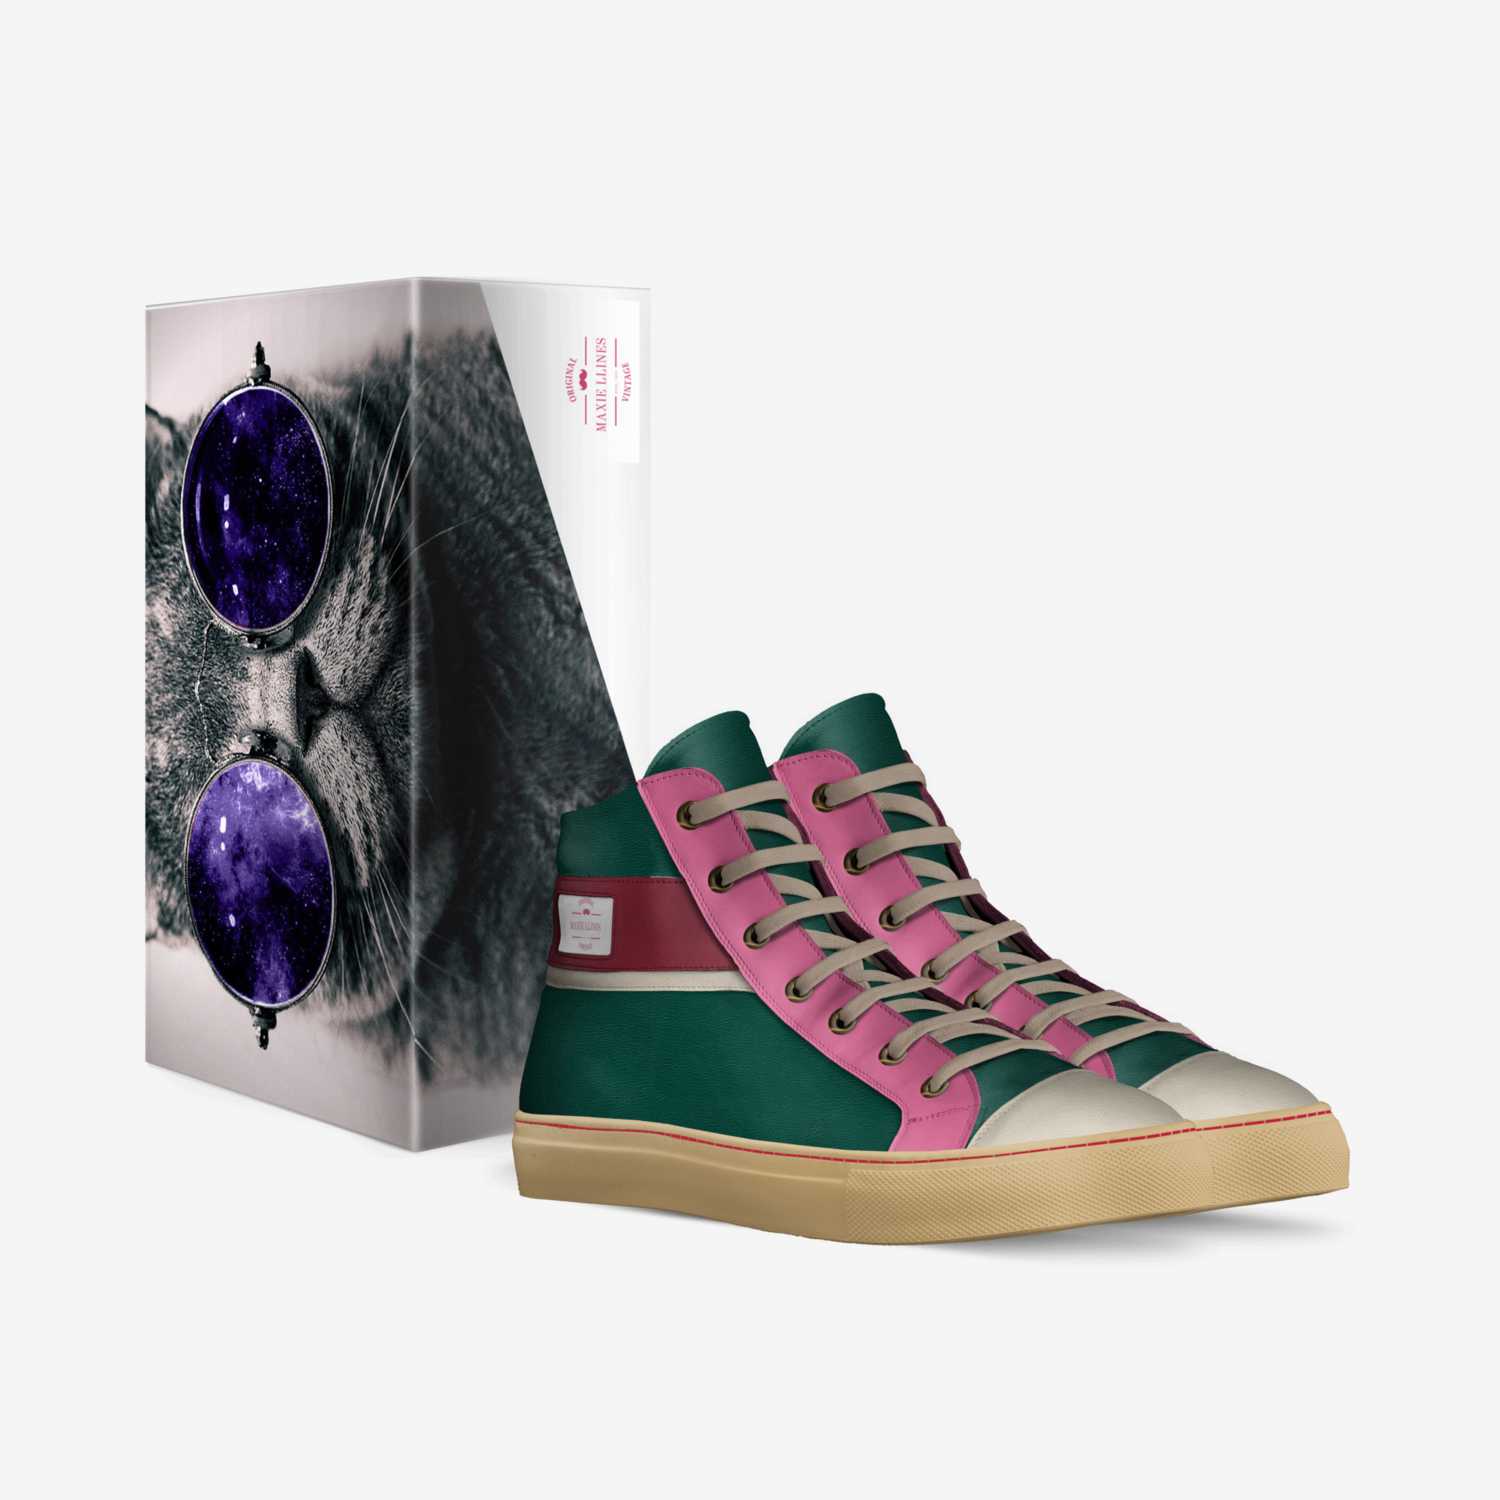 Maxie llines   custom made in Italy shoes by Maja Lengier | Box view